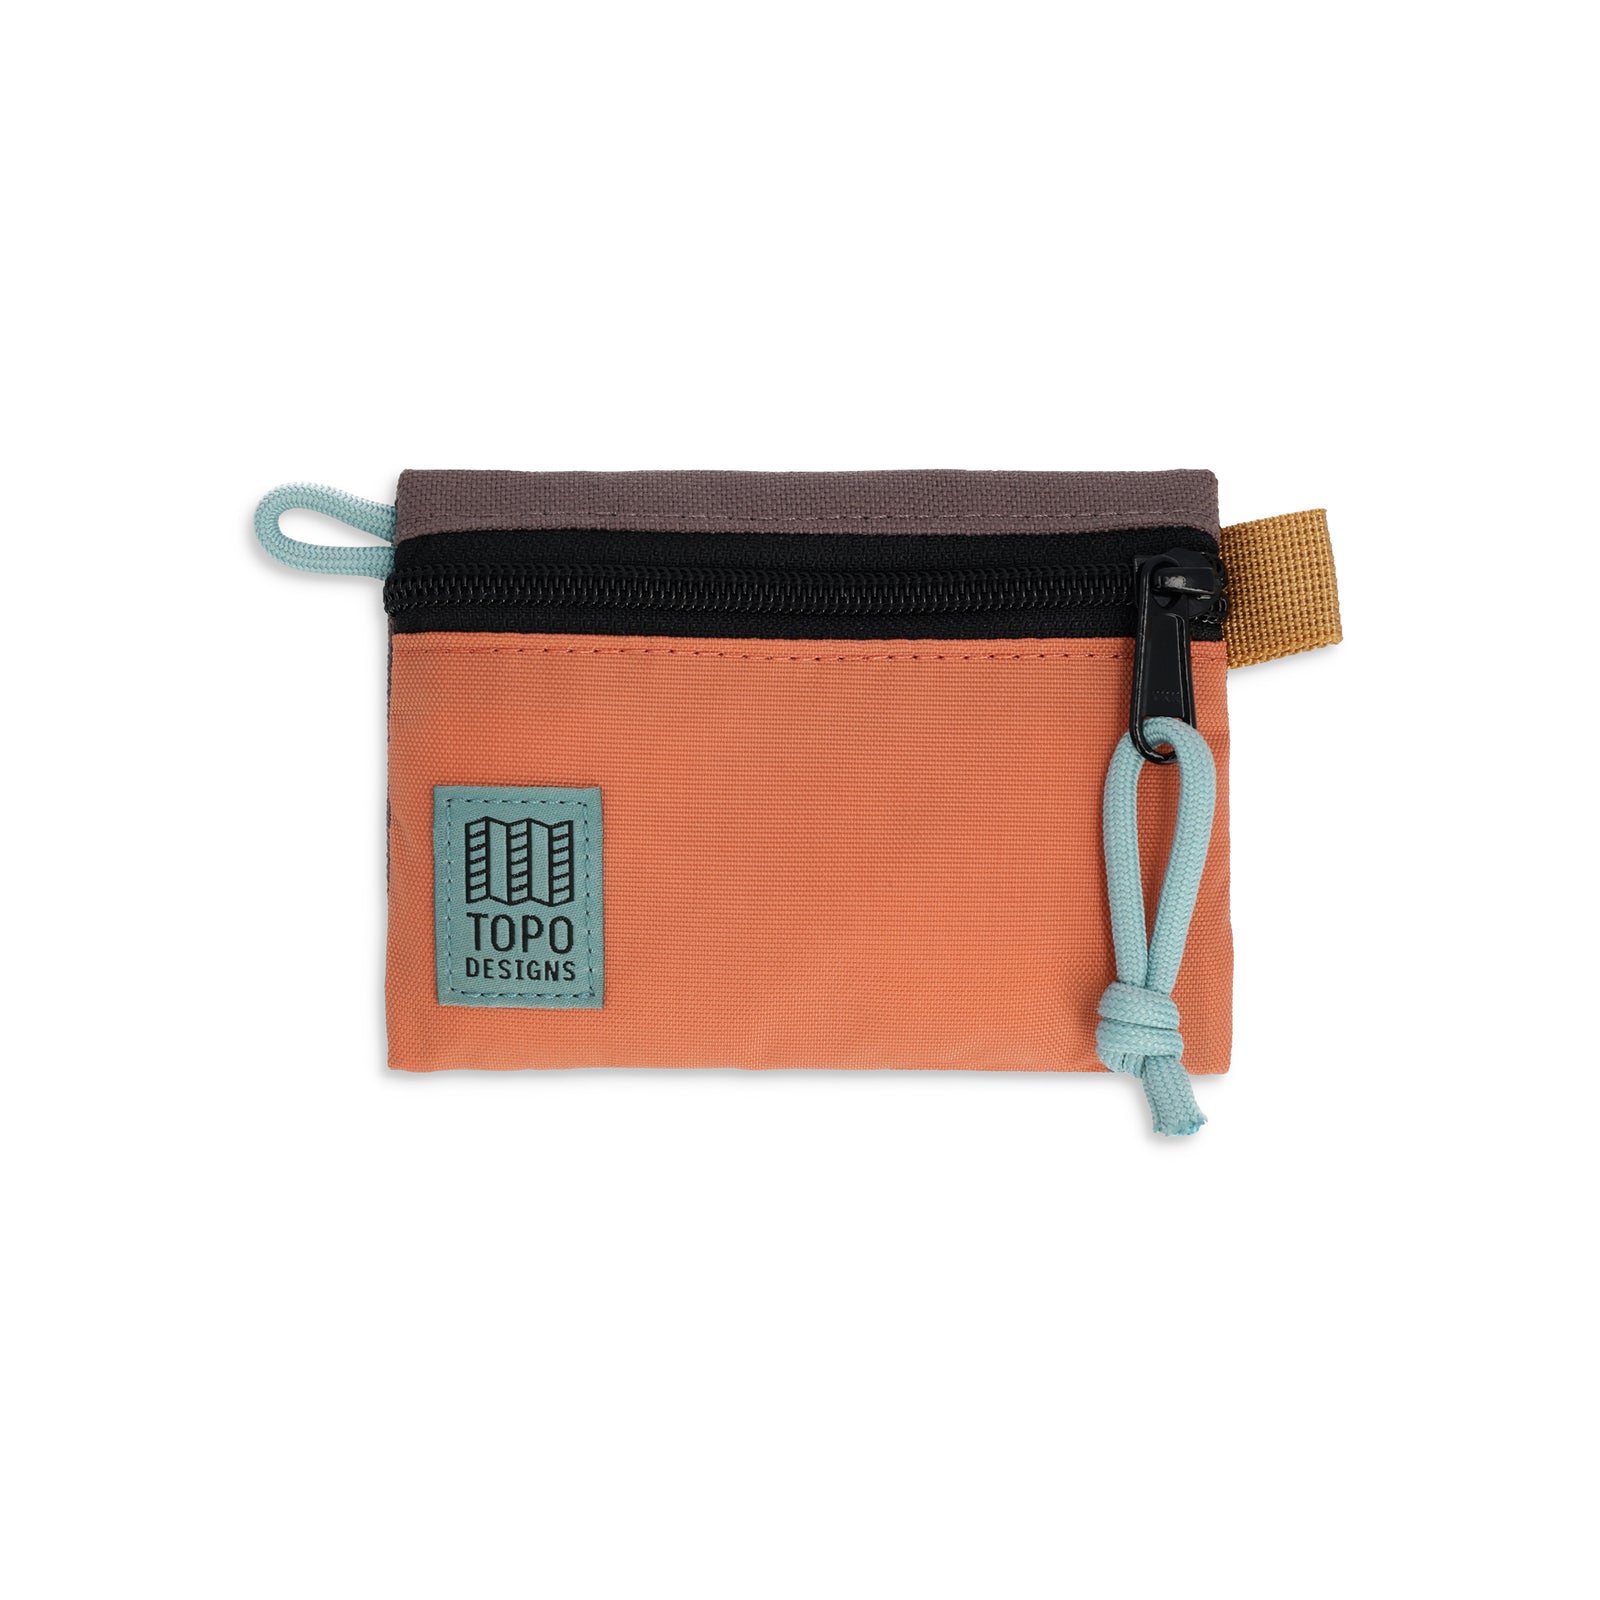 Topo Designs Accessory Bag "Micro" in "Coral / Peppercorn"